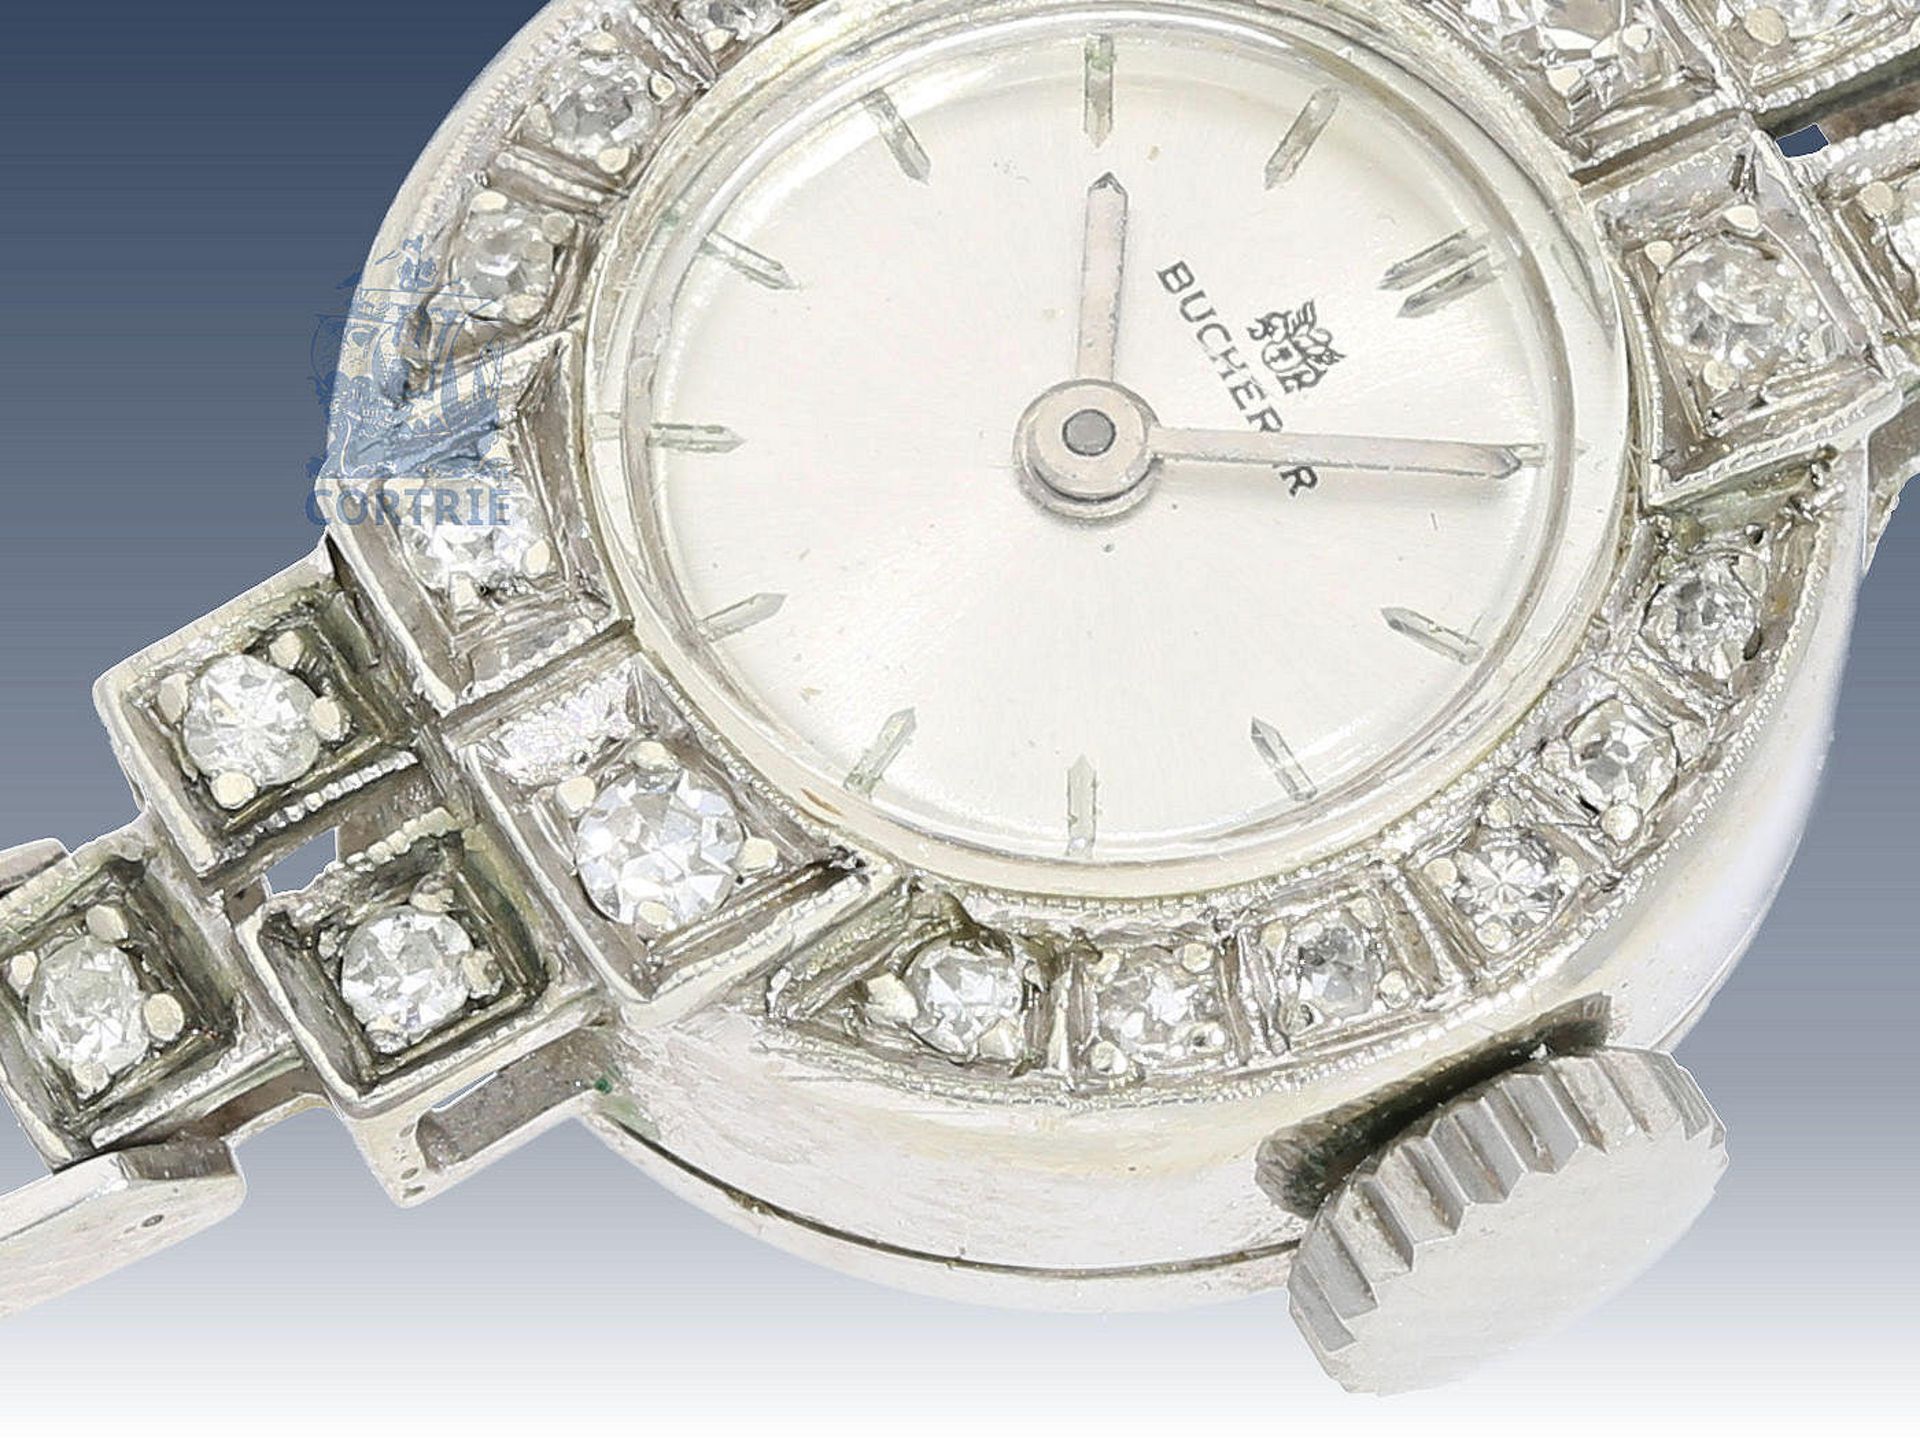 Armbanduhr: vintage Damenuhr mit Diamantbesatz, Cocktailuhr von Bucherer, ca. 1950 Ca. Ø16mm, ca. - Bild 2 aus 3